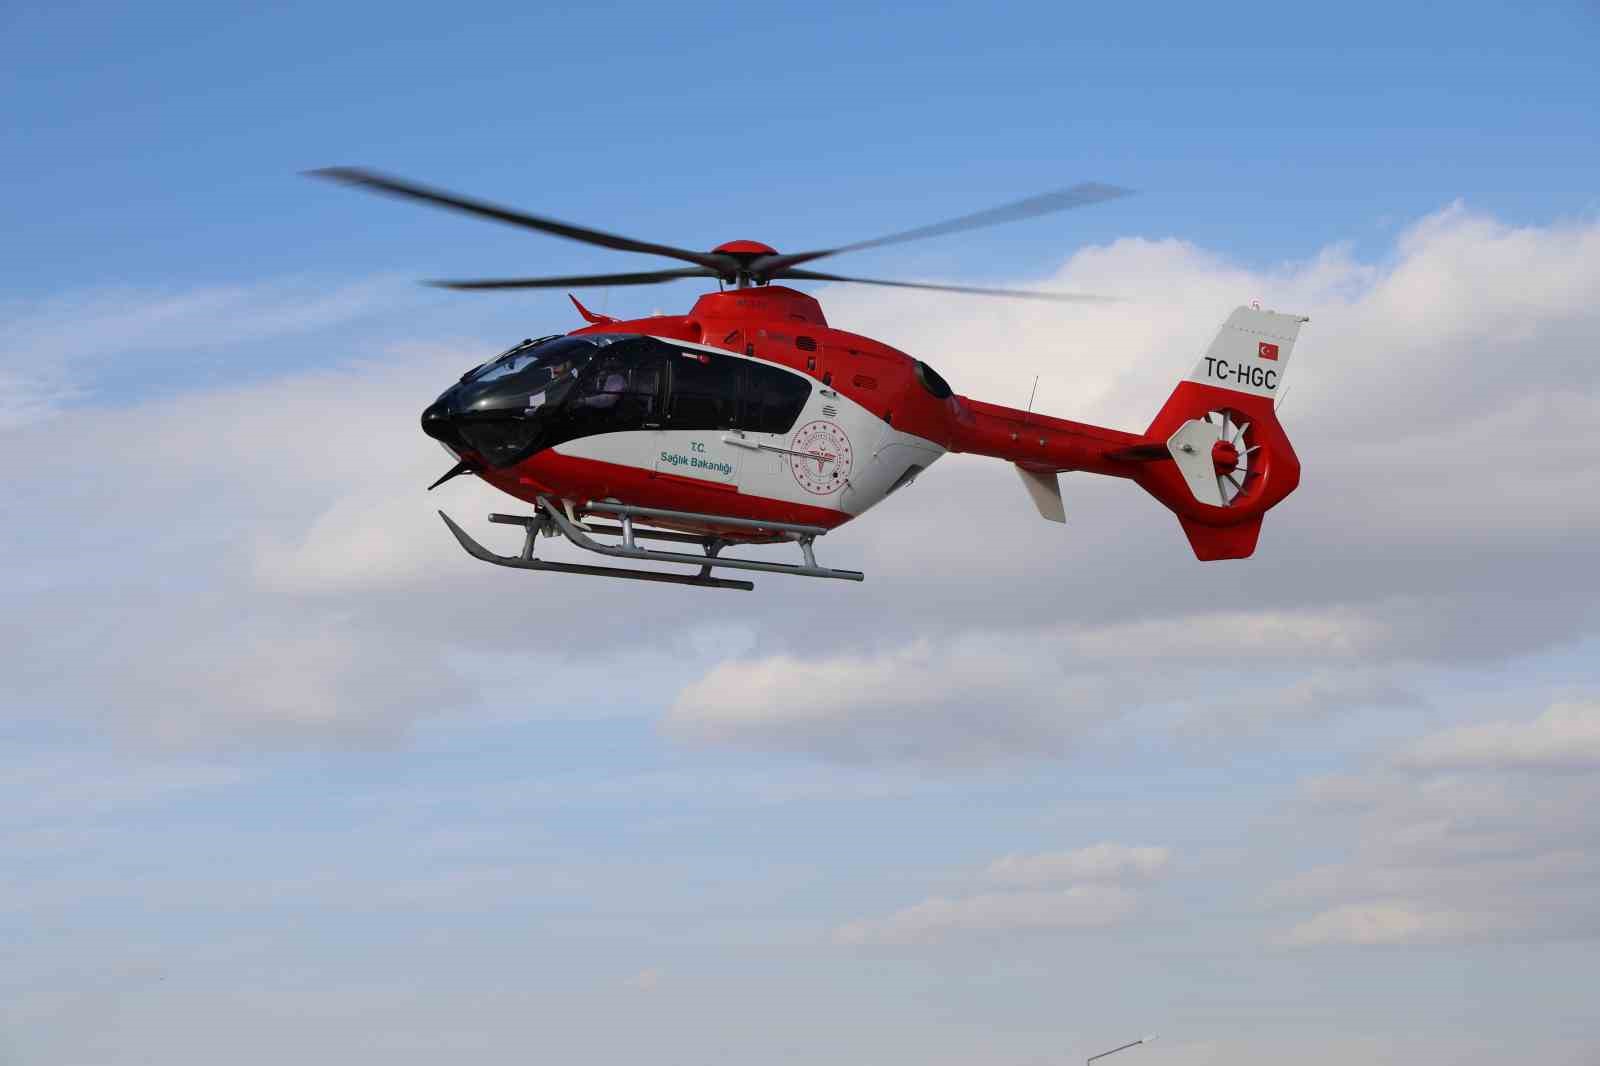 Solunum sıkıntısı çeken bebek ambulans helikopterle Kayseri’ye nakledildi